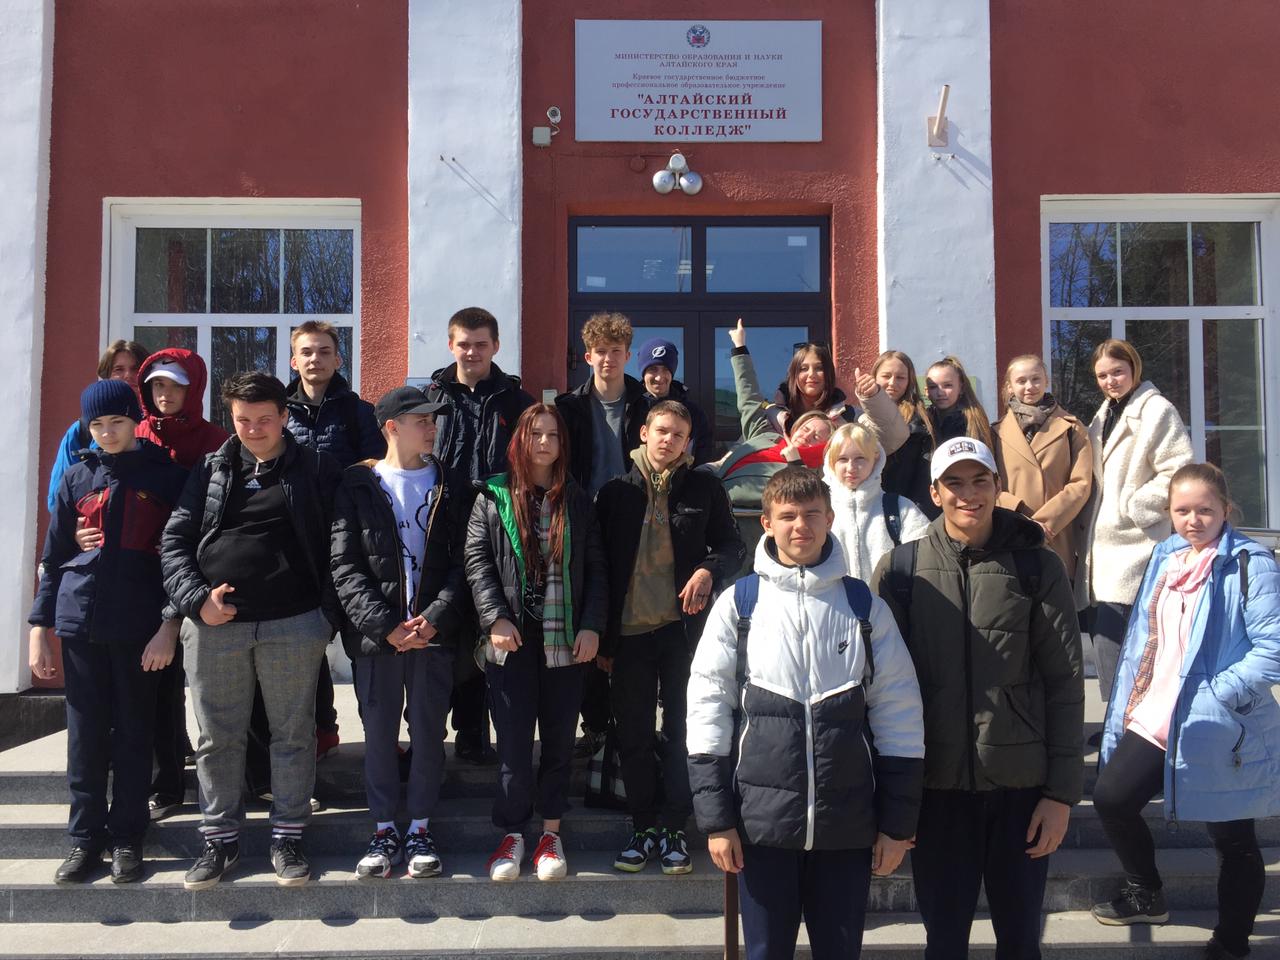 Экскурсия в Алтайский государственный колледж.